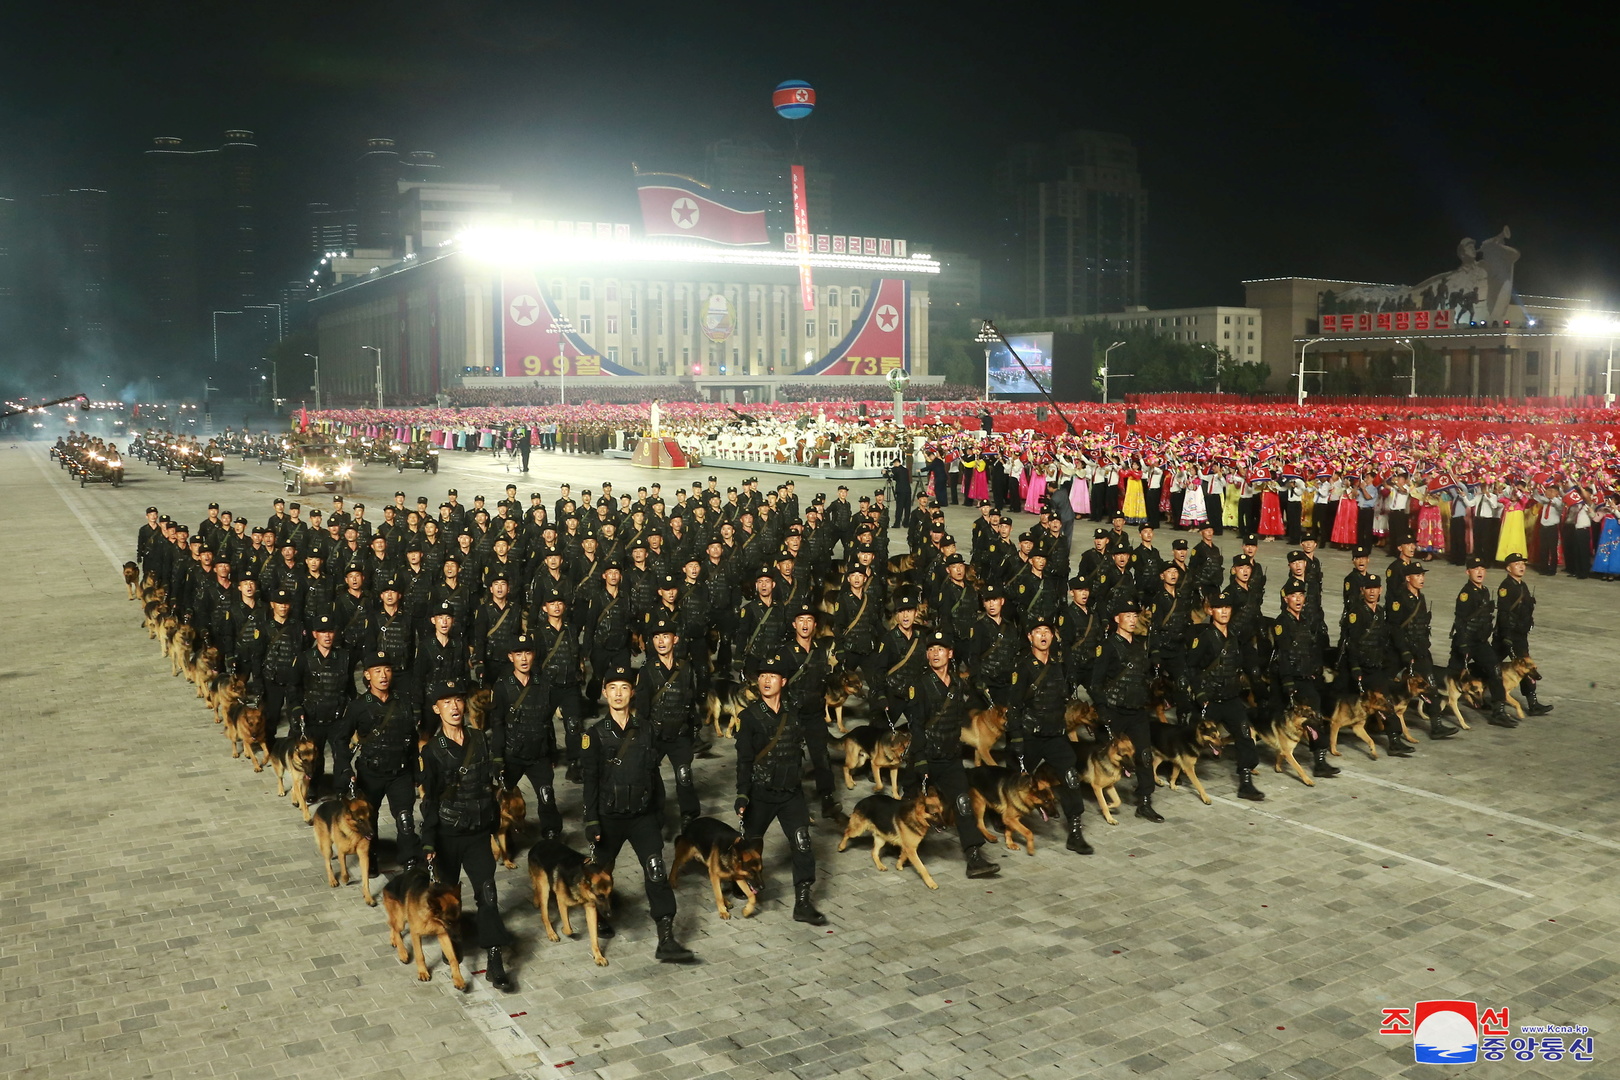 La Corée du Nord organise une parade pour fêter la fondation de la République démocratique populaire